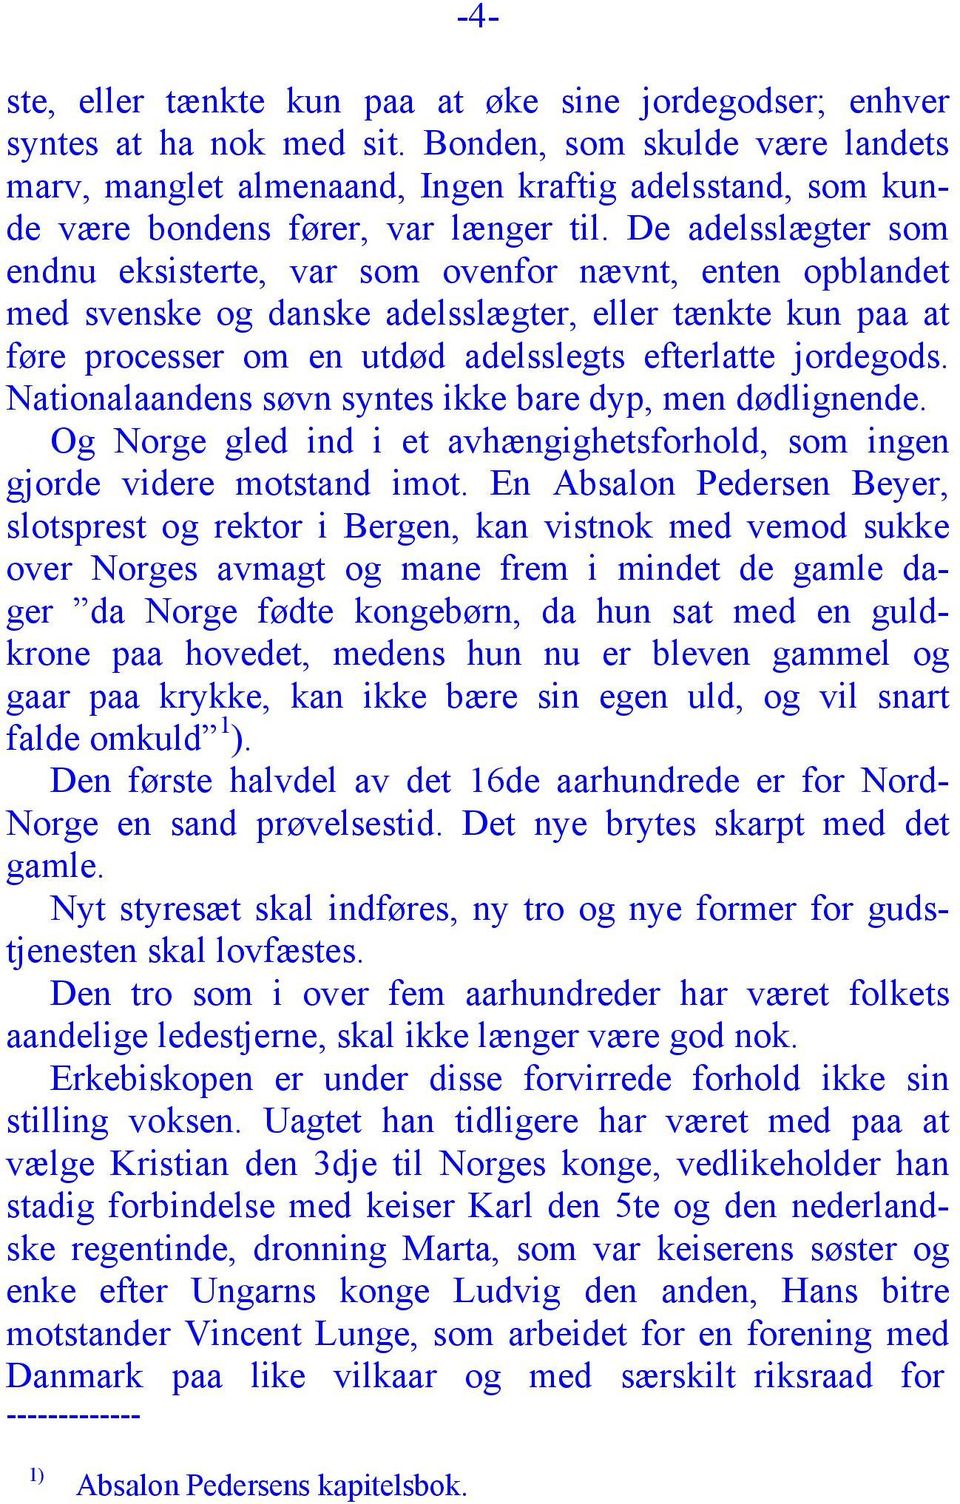 De adelsslægter som endnu eksisterte, var som ovenfor nævnt, enten opblandet med svenske og danske adelsslægter, eller tænkte kun paa at føre processer om en utdød adelsslegts efterlatte jordegods.